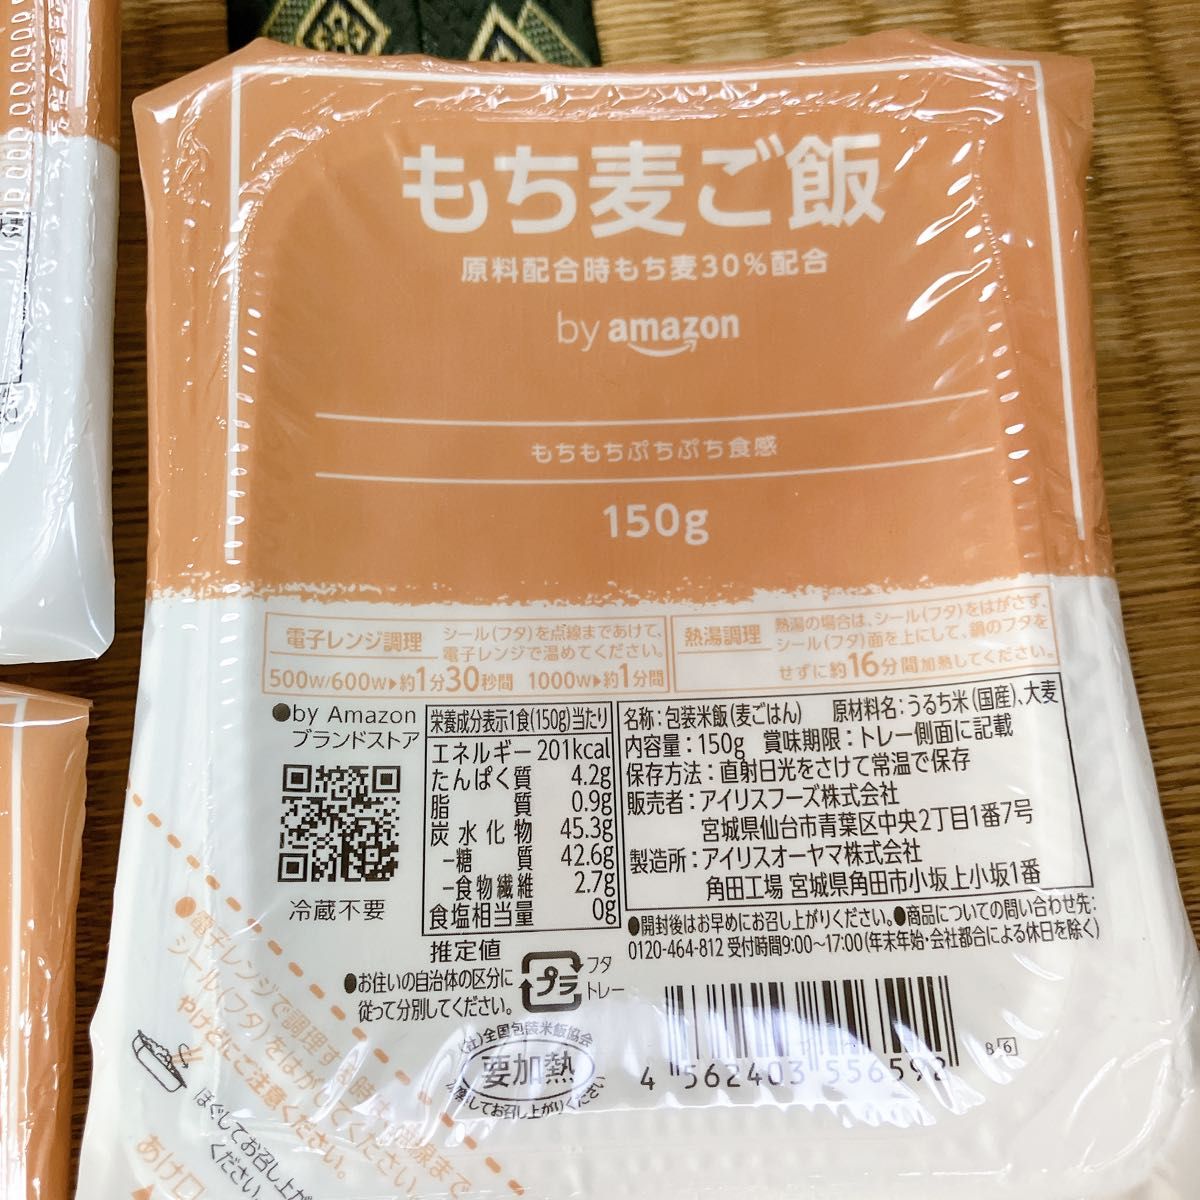 【31個セット】by Amazon もち麦パックごはん 150g 低温製法米